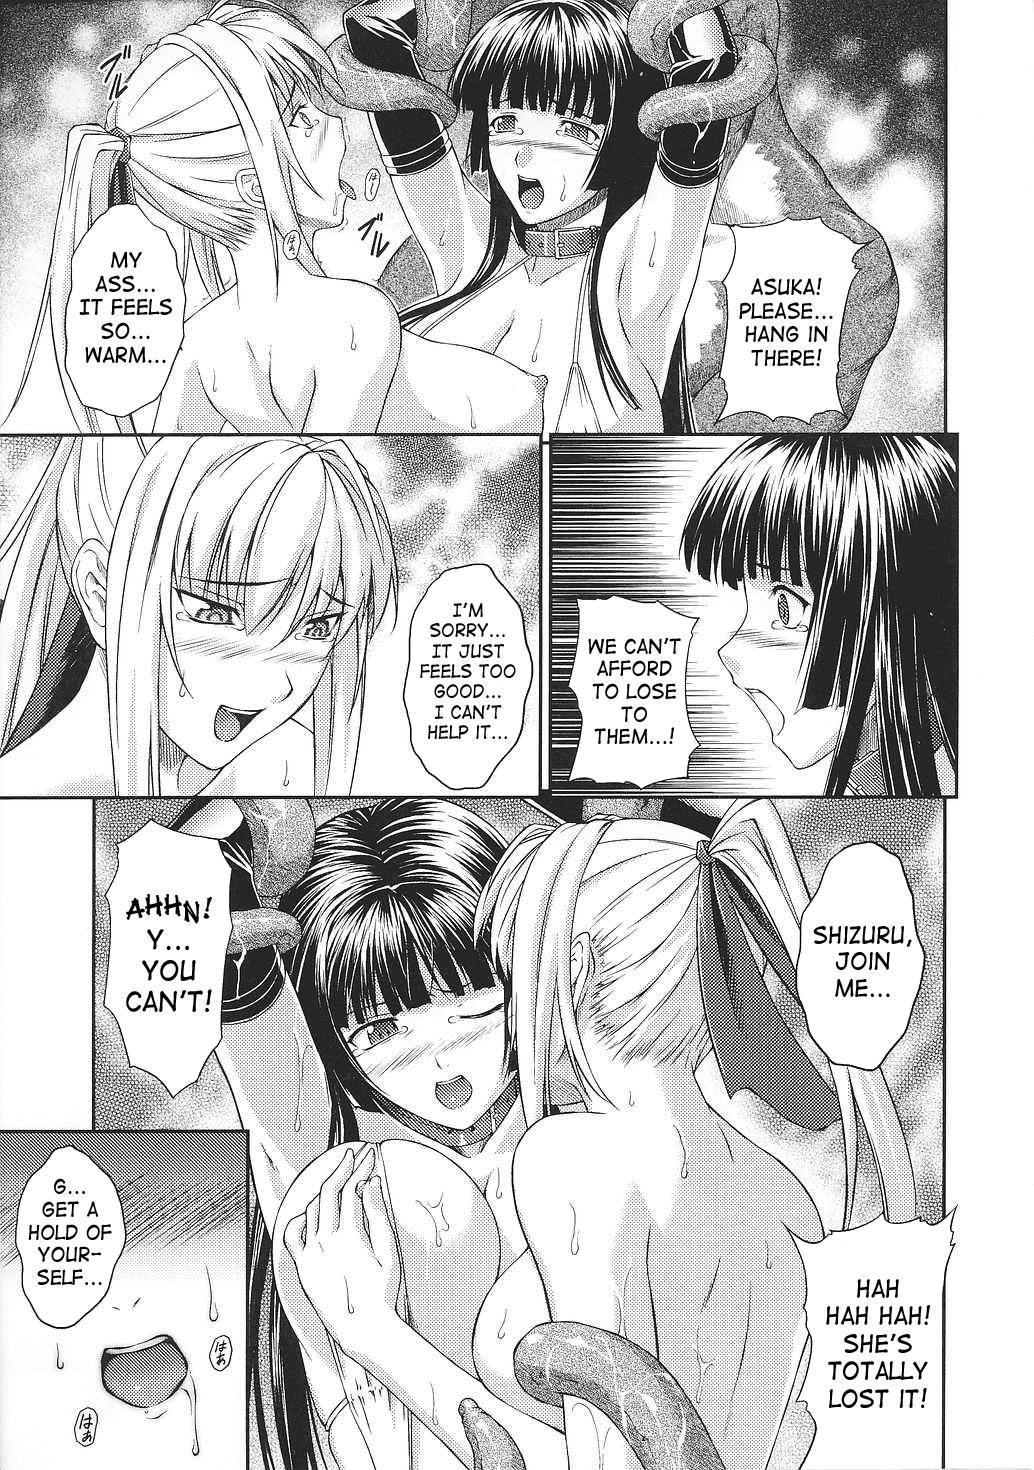 Asuka and Shizuru 103 hentai manga